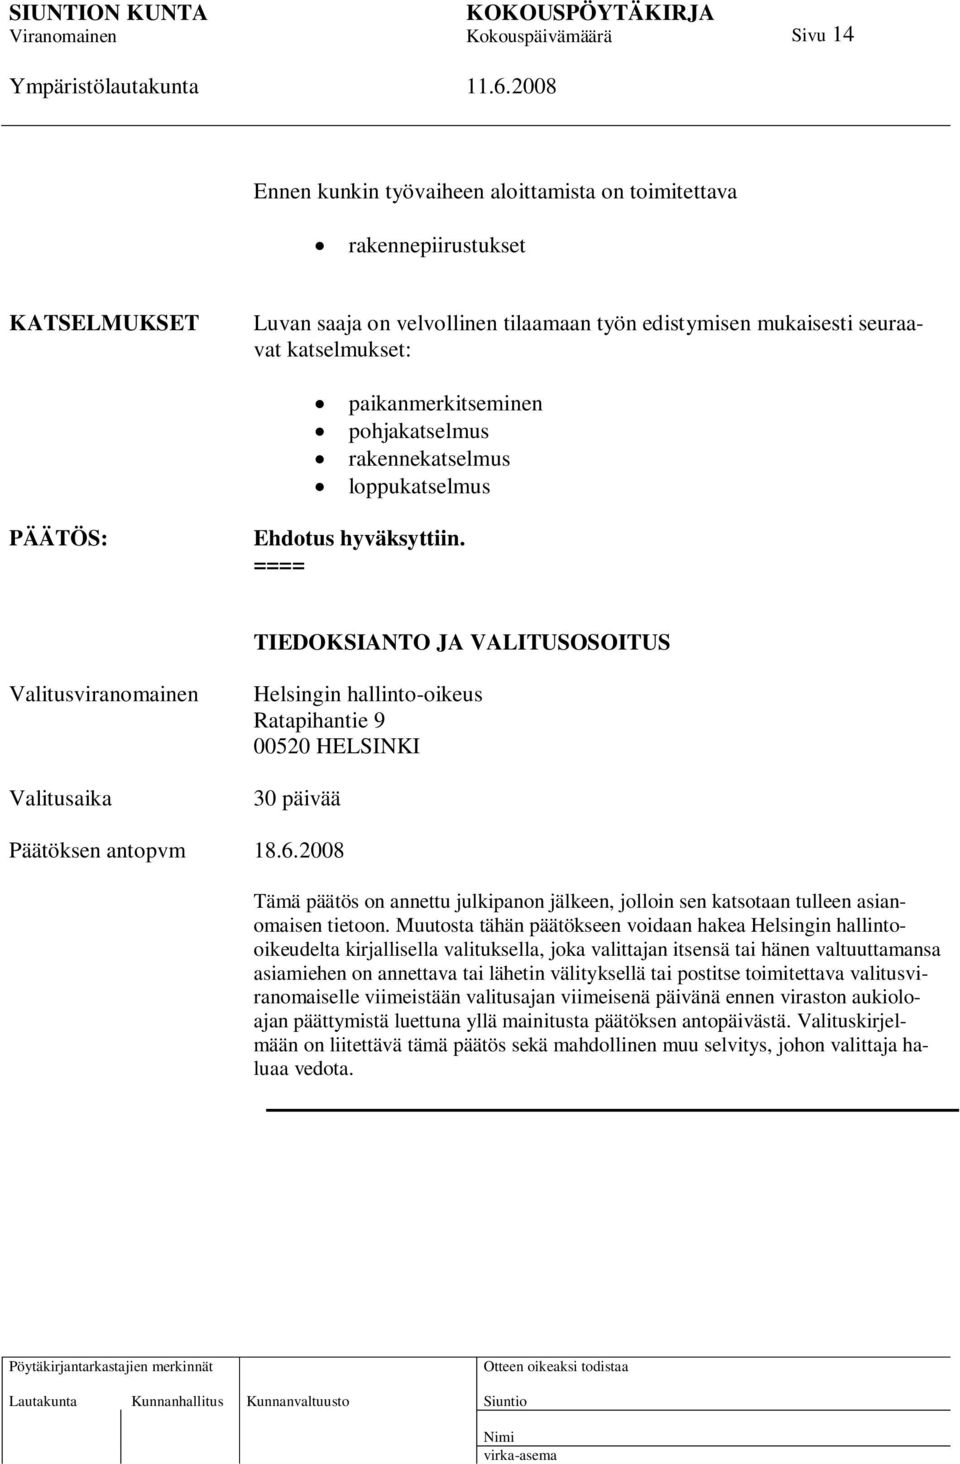 ==== TIEDOKSIANTO JA VALITUSOSOITUS Valitusviranomainen Valitusaika Helsingin hallinto-oikeus Ratapihantie 9 00520 HELSINKI 30 päivää Päätöksen antopvm 18.6.